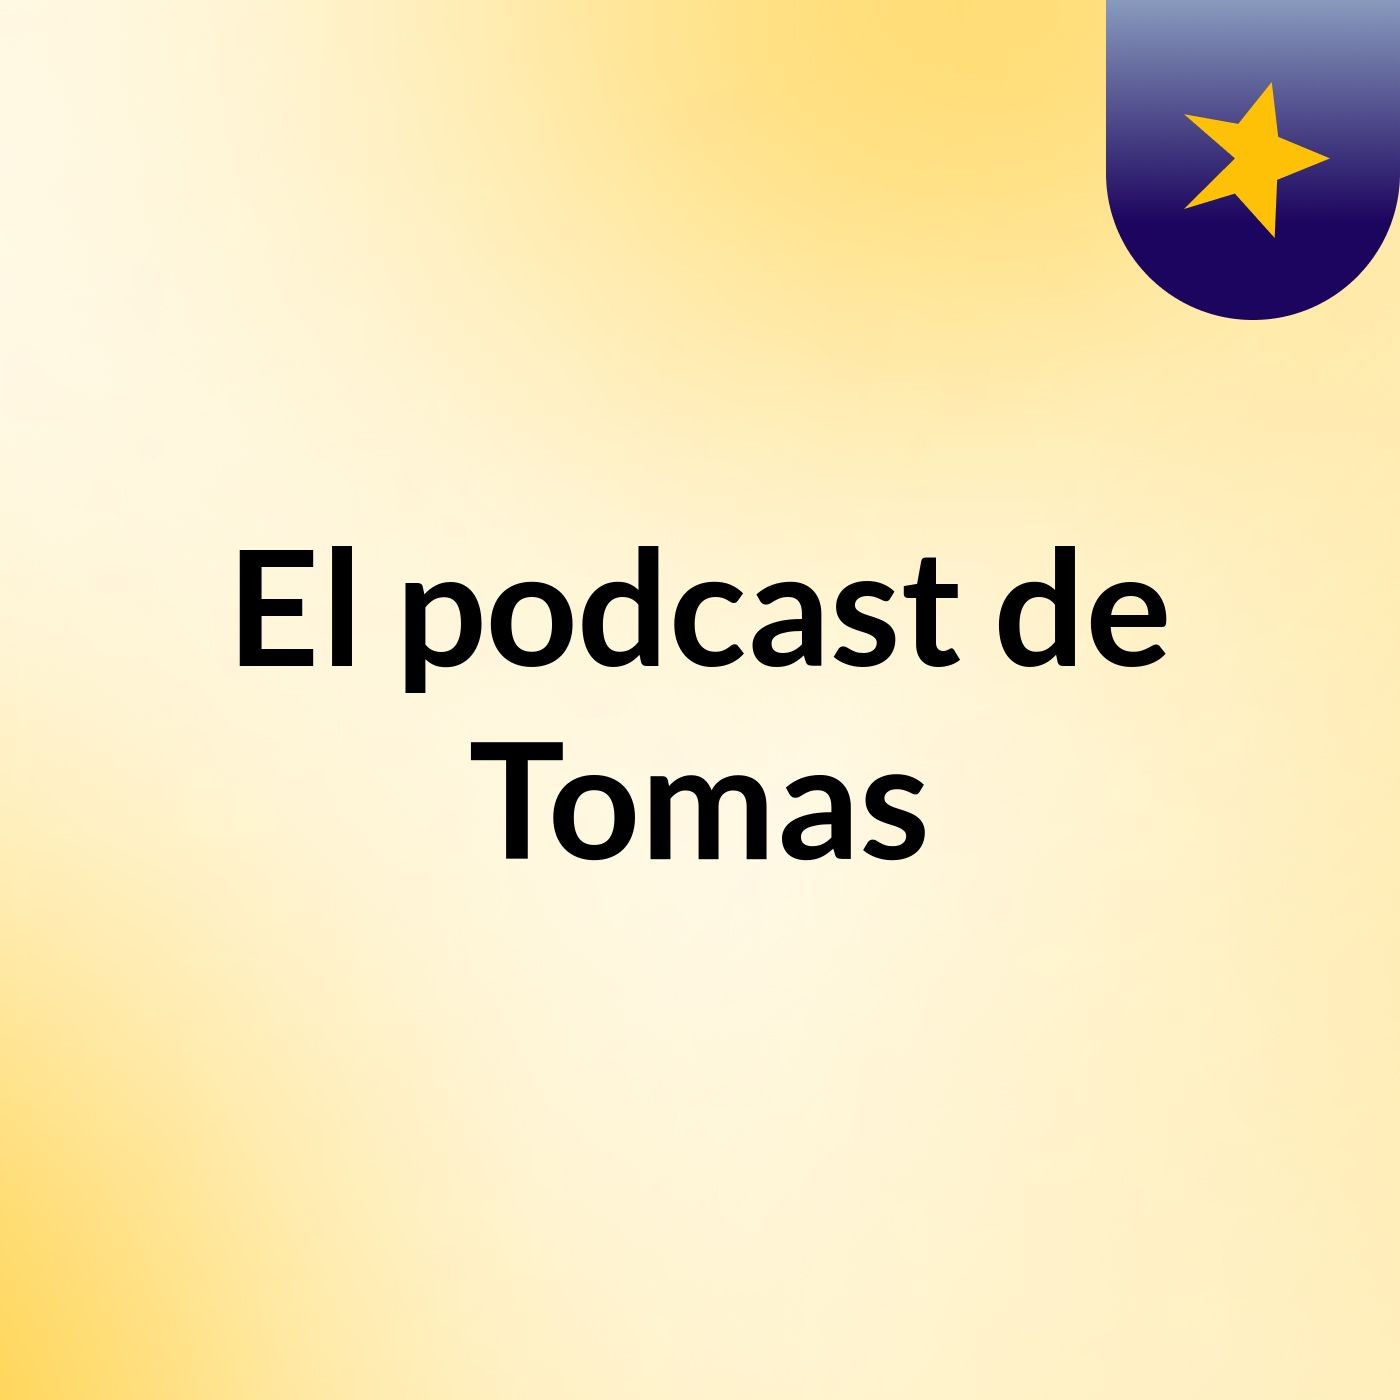 Episodio 4 - El podcast de Tomas